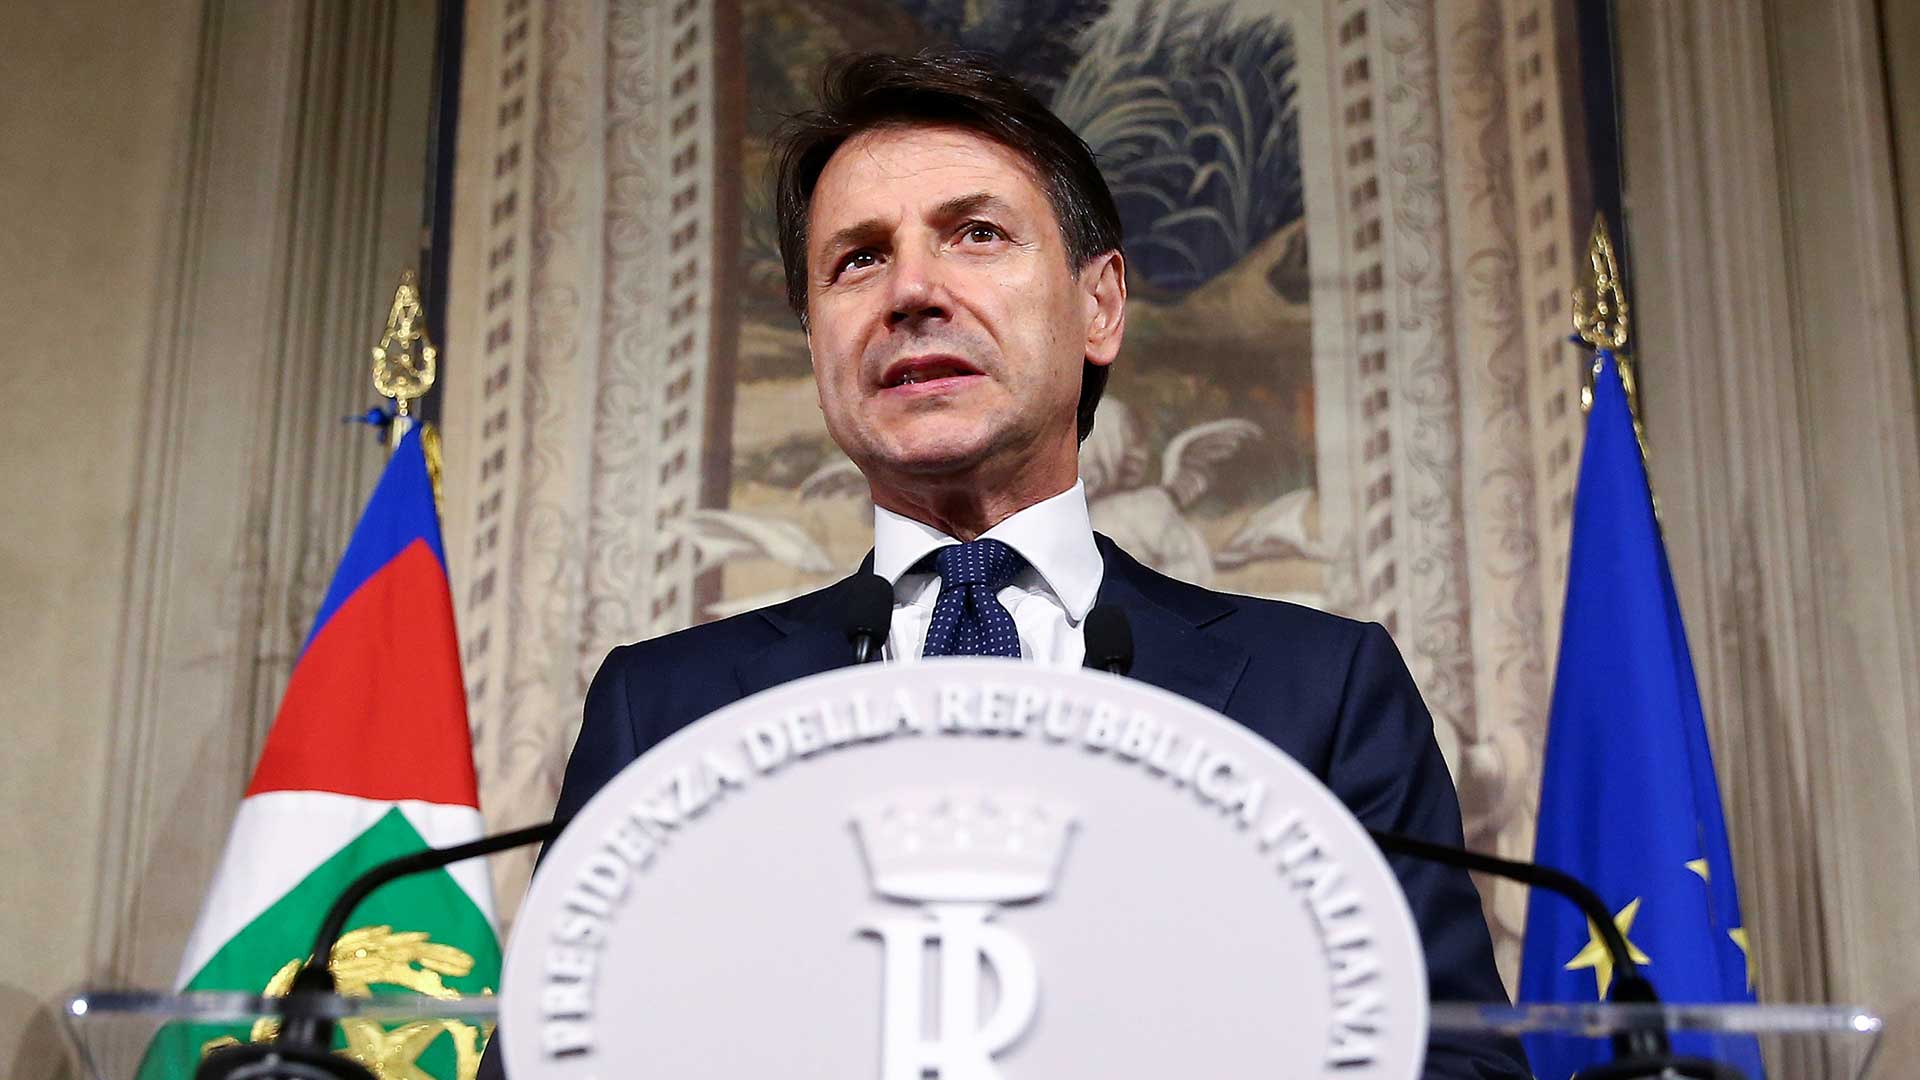 Giuseppe Conte jura el cargo como primer ministro de Italia